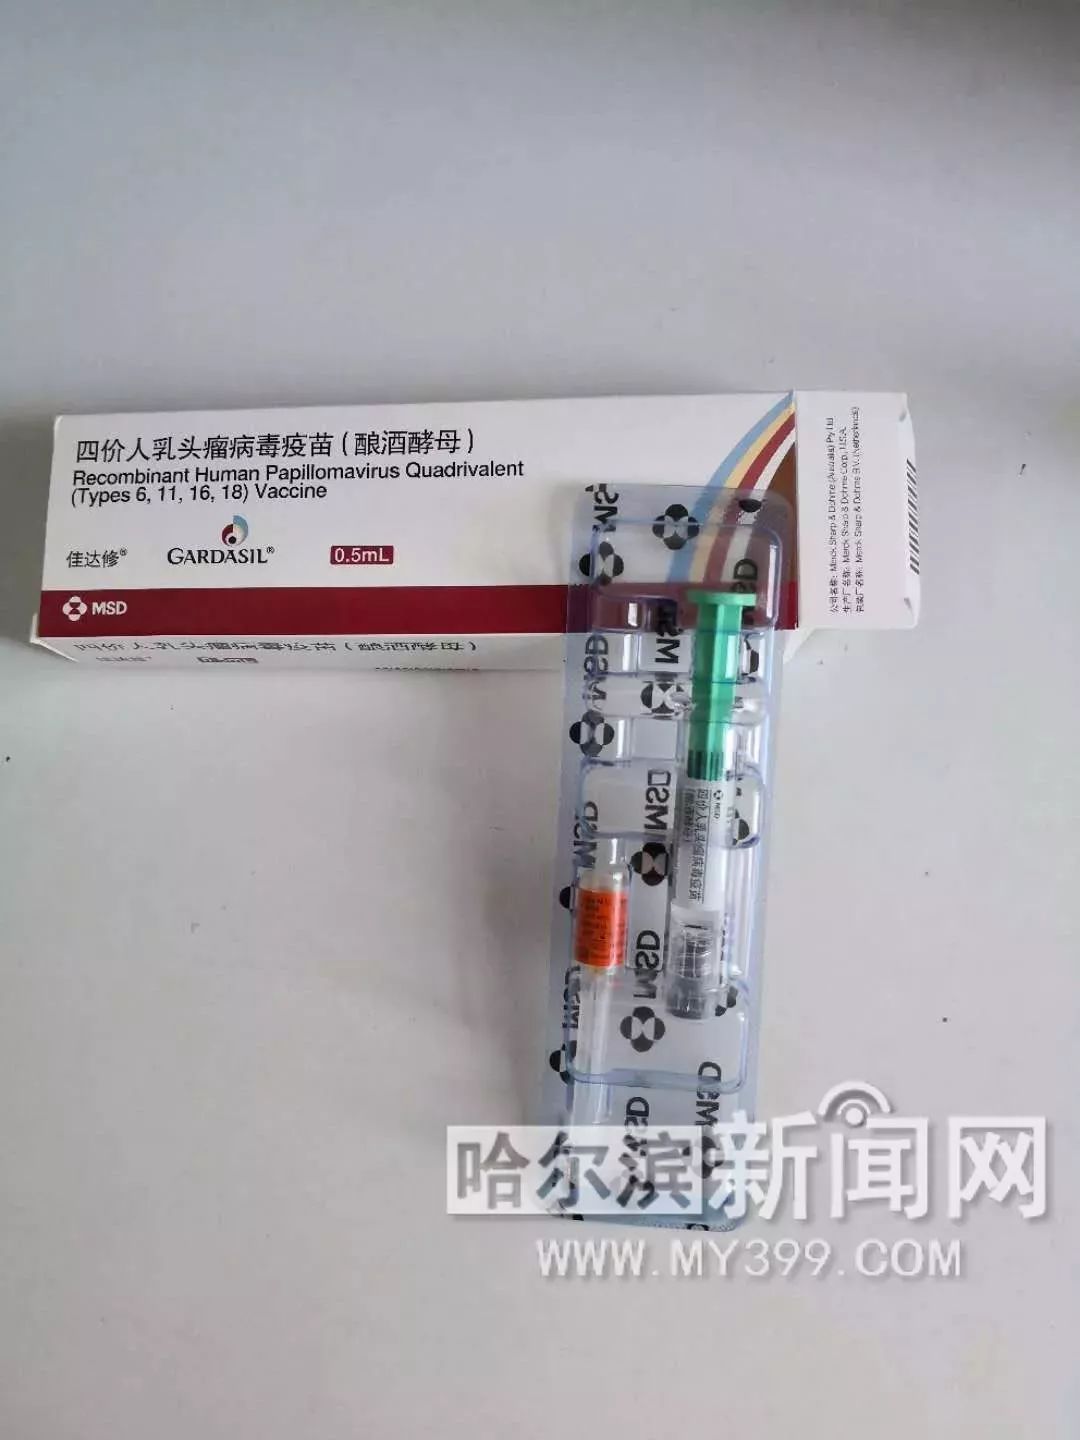 24日,在通江社区医院记者看到了新到的四价疫苗,此疫苗为进口疫苗,每